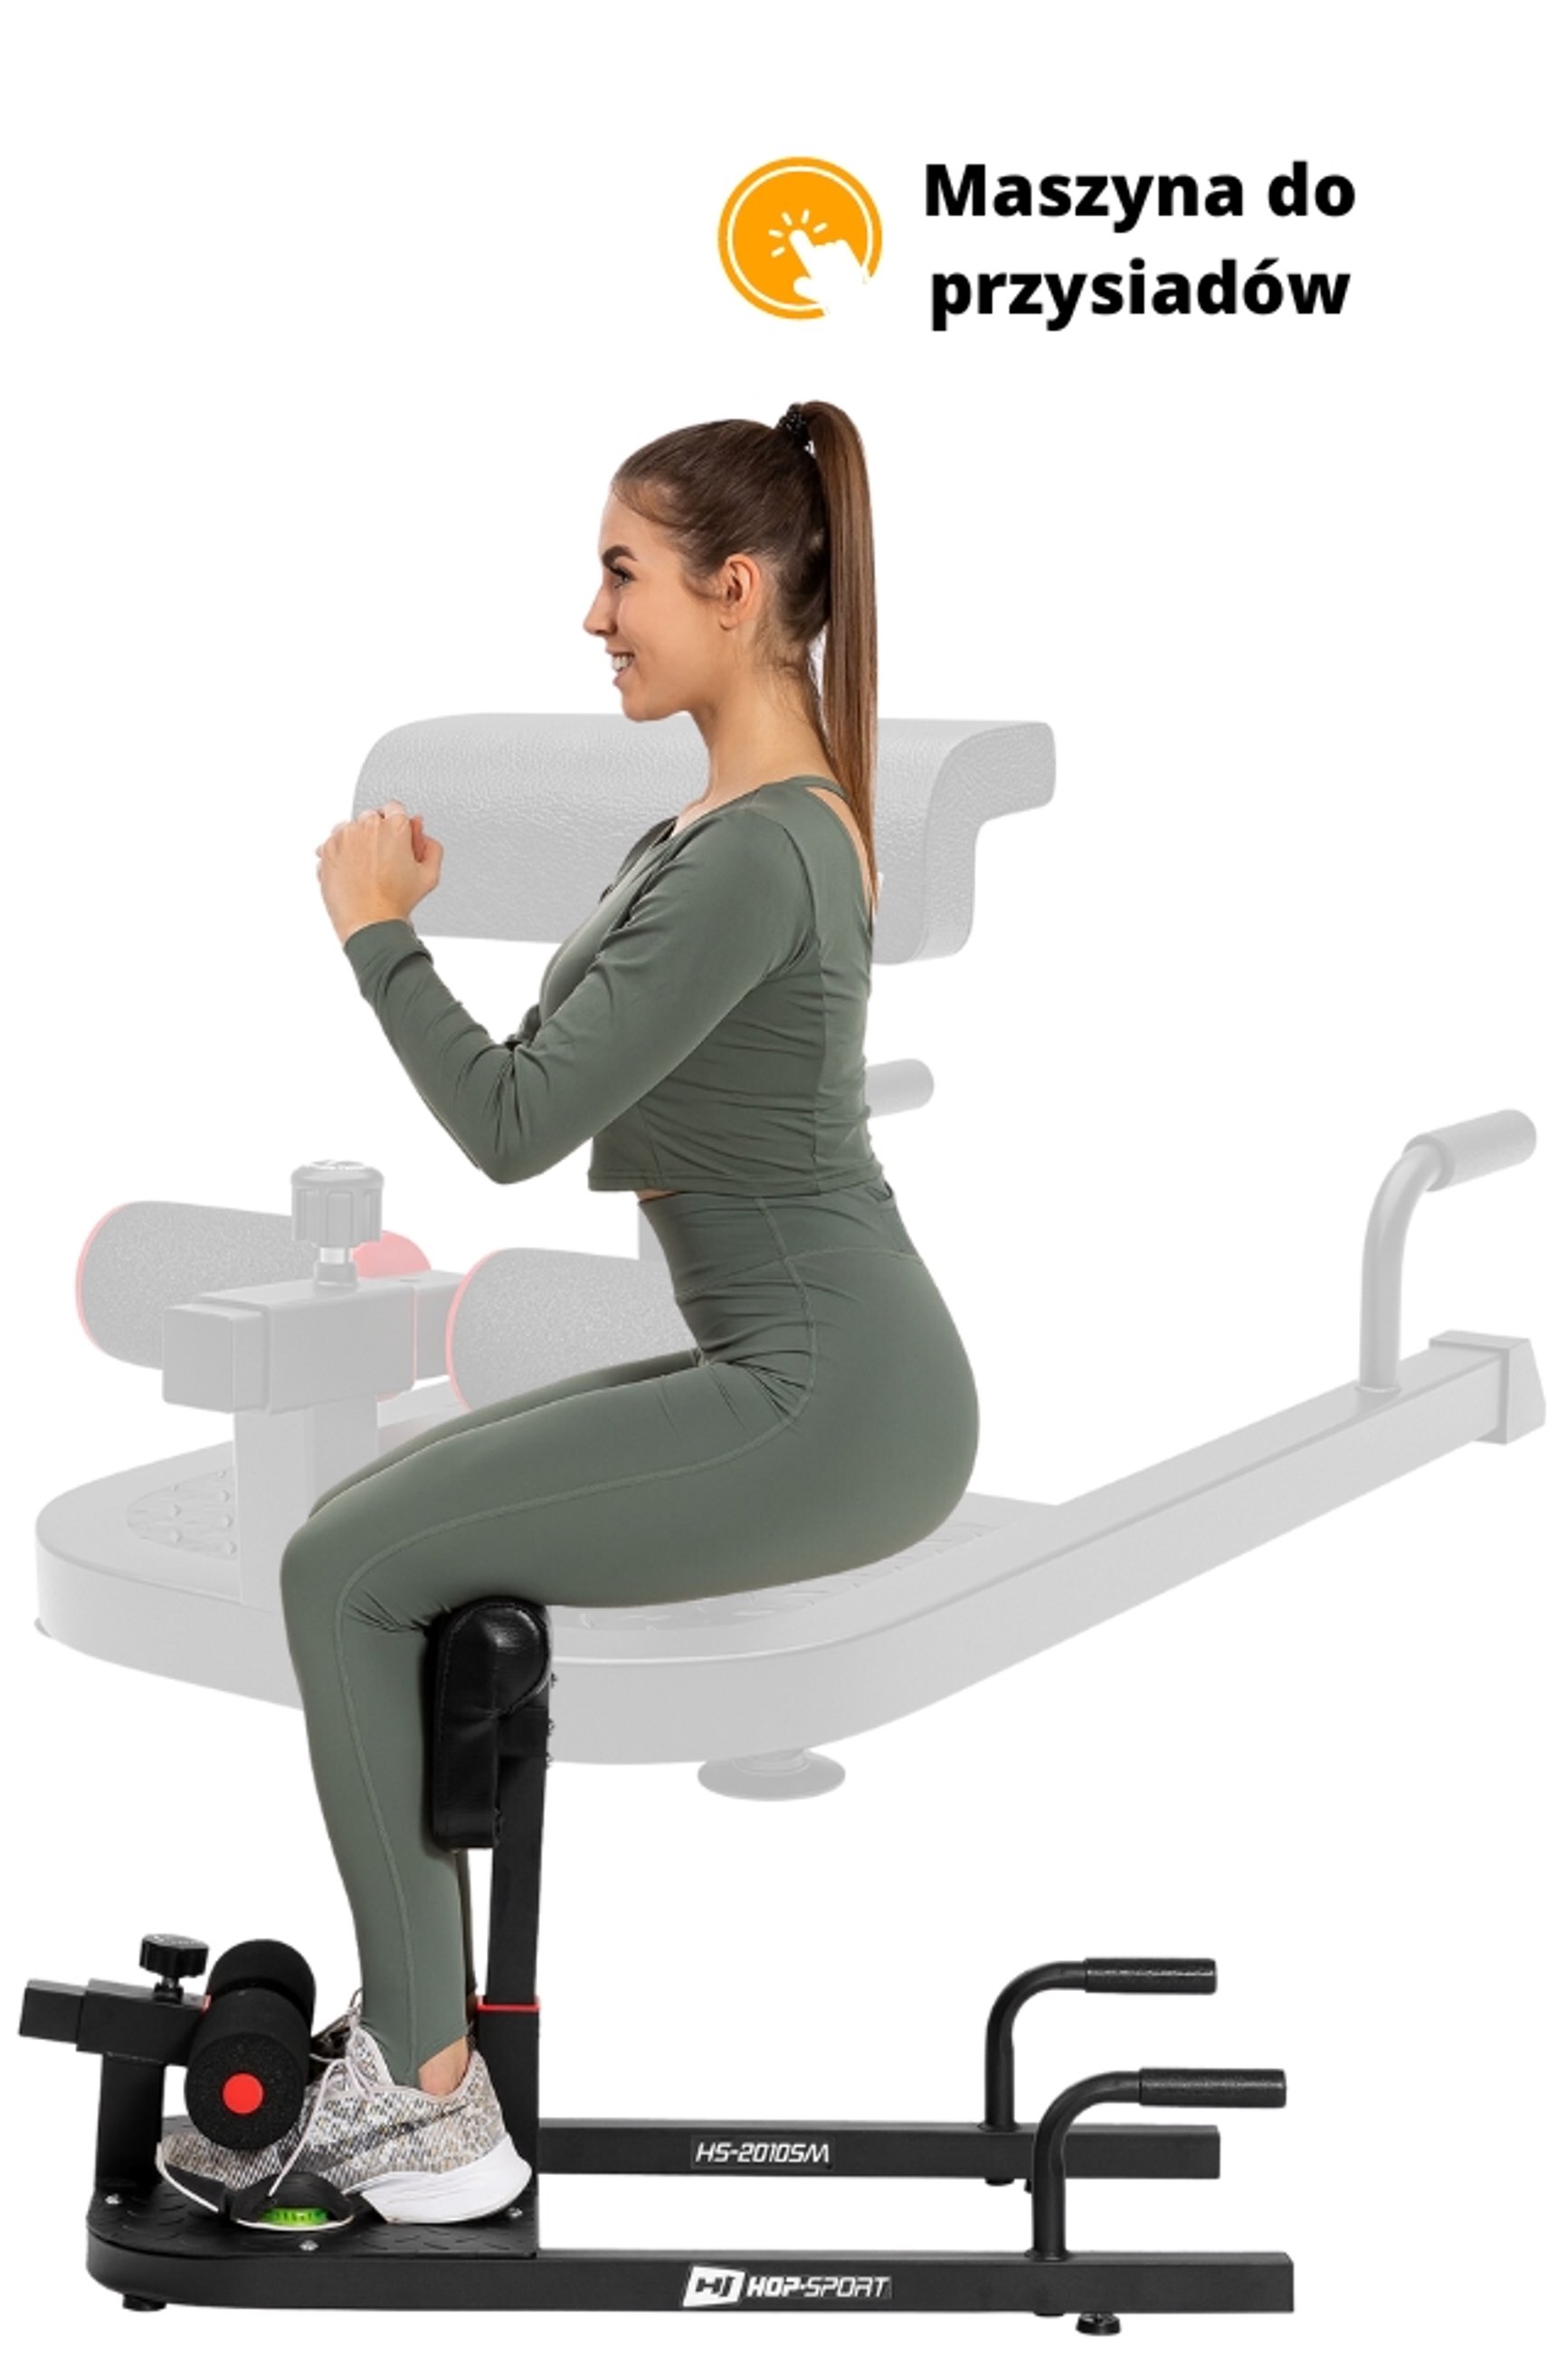 modelka ćwicząca na maszynie do przysiadów HS-2020SM Sissy Squat marki Hop-Sport